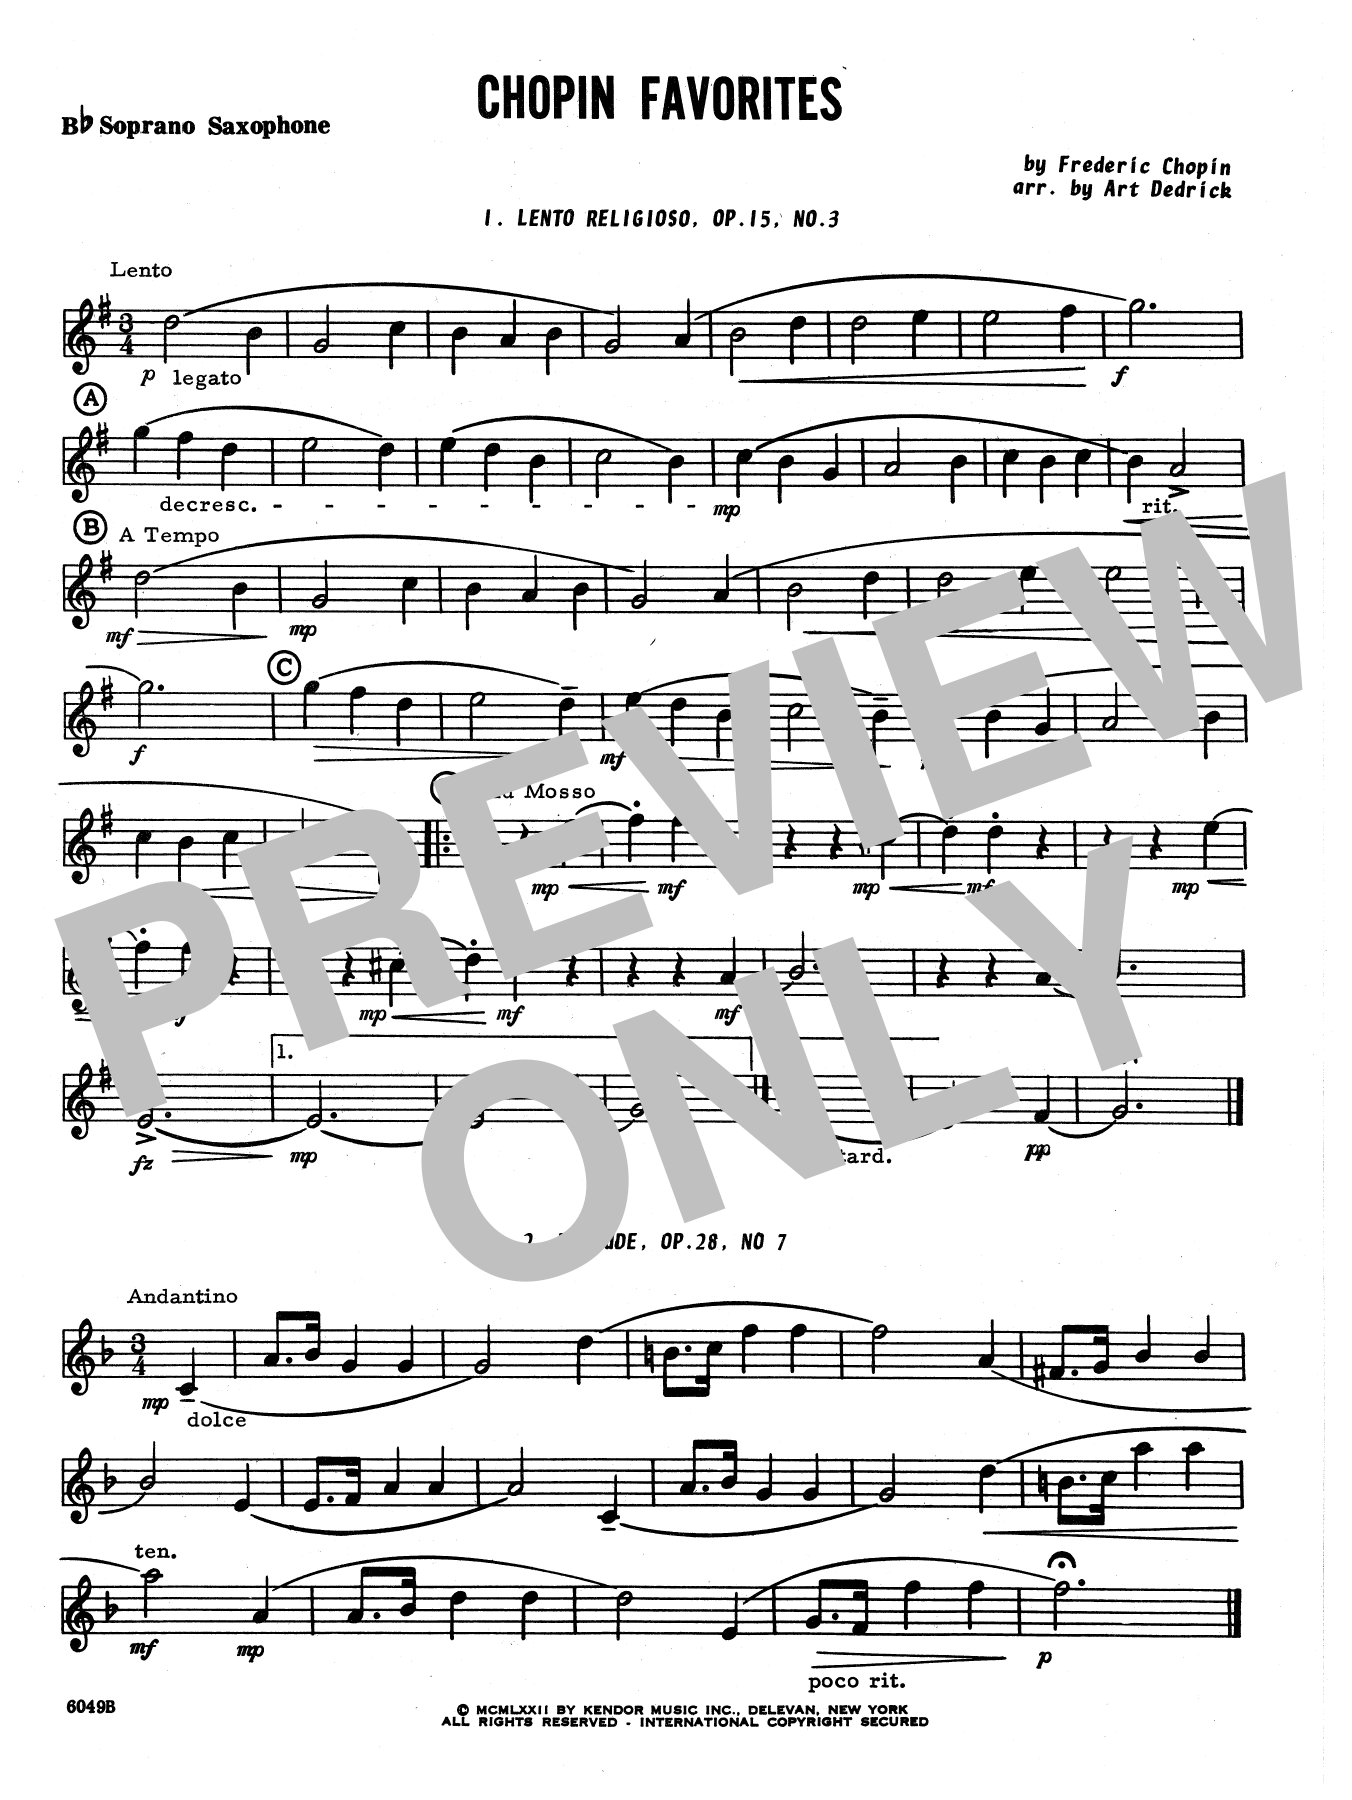 Art Dedrick Chopin Favorites - Bb Soprano Sax sheet music notes and chords. Download Printable PDF.